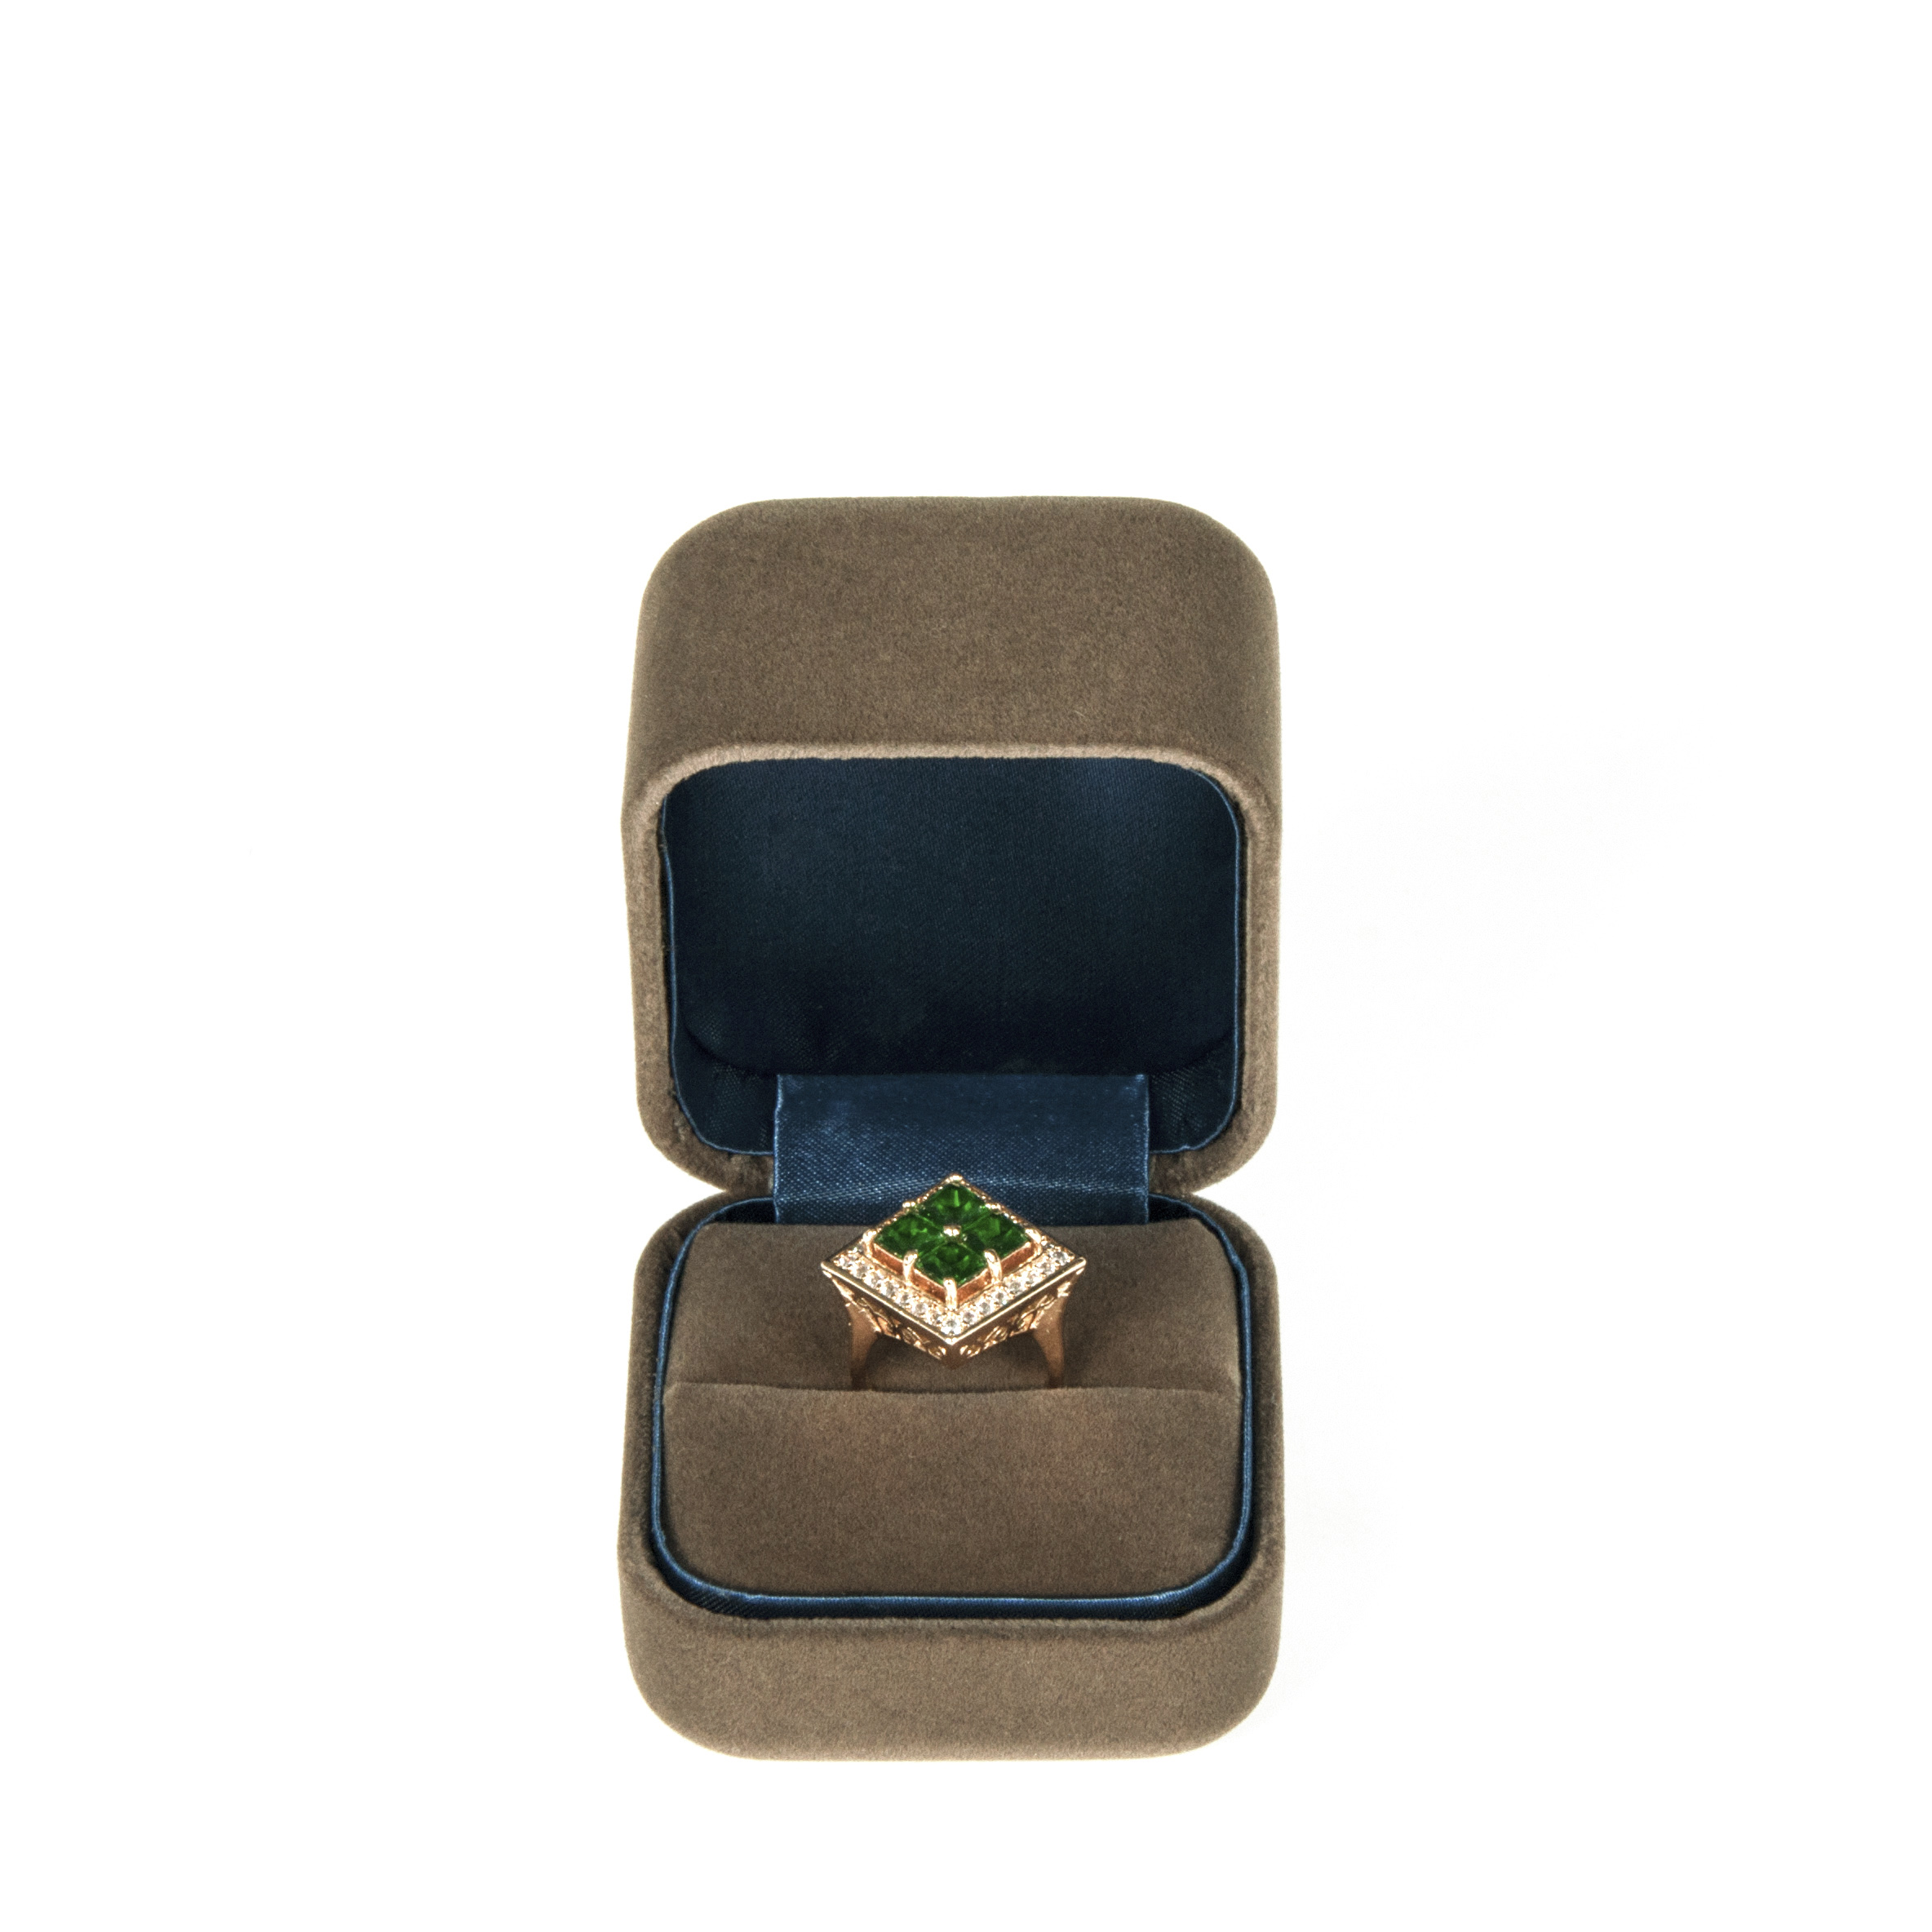 Popolare su misura Velvet Ring box design per fascia alta fine Jewelry pacchetto con logo stampato con qualità di alto grado.